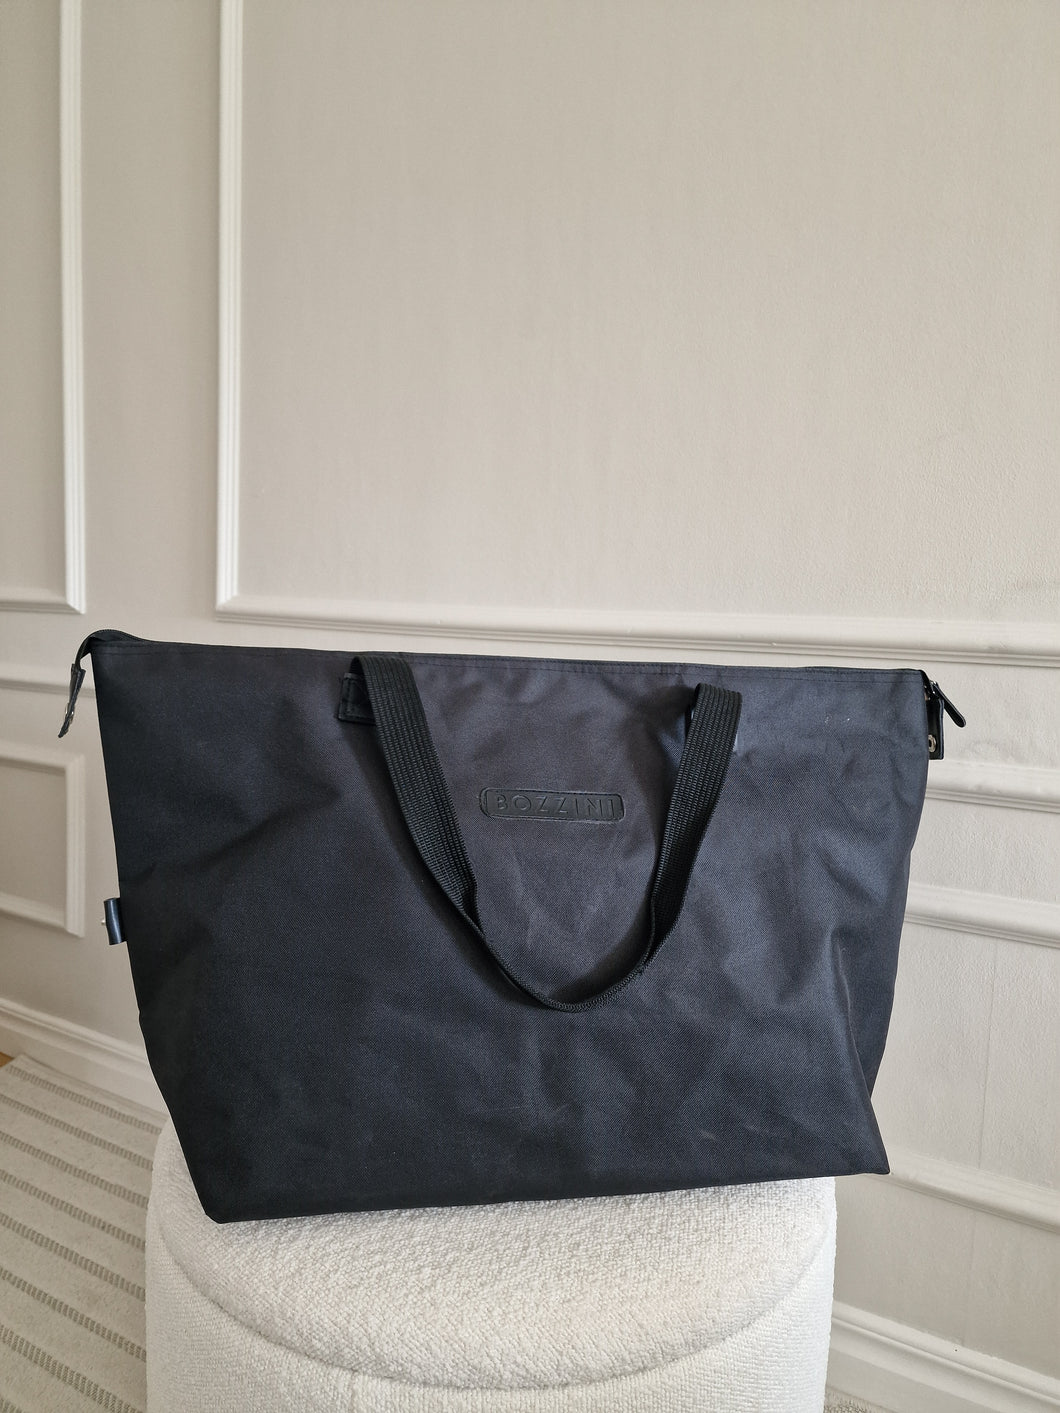 Bag BOZZINI black with handle